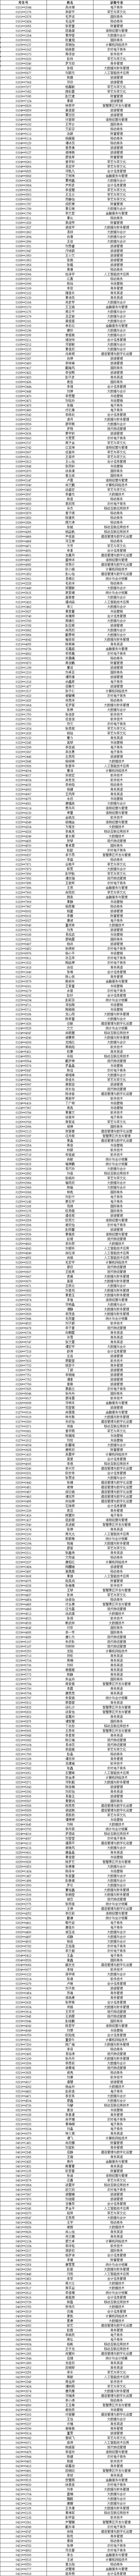 湖南商务职业技术学院单独招生录取名单